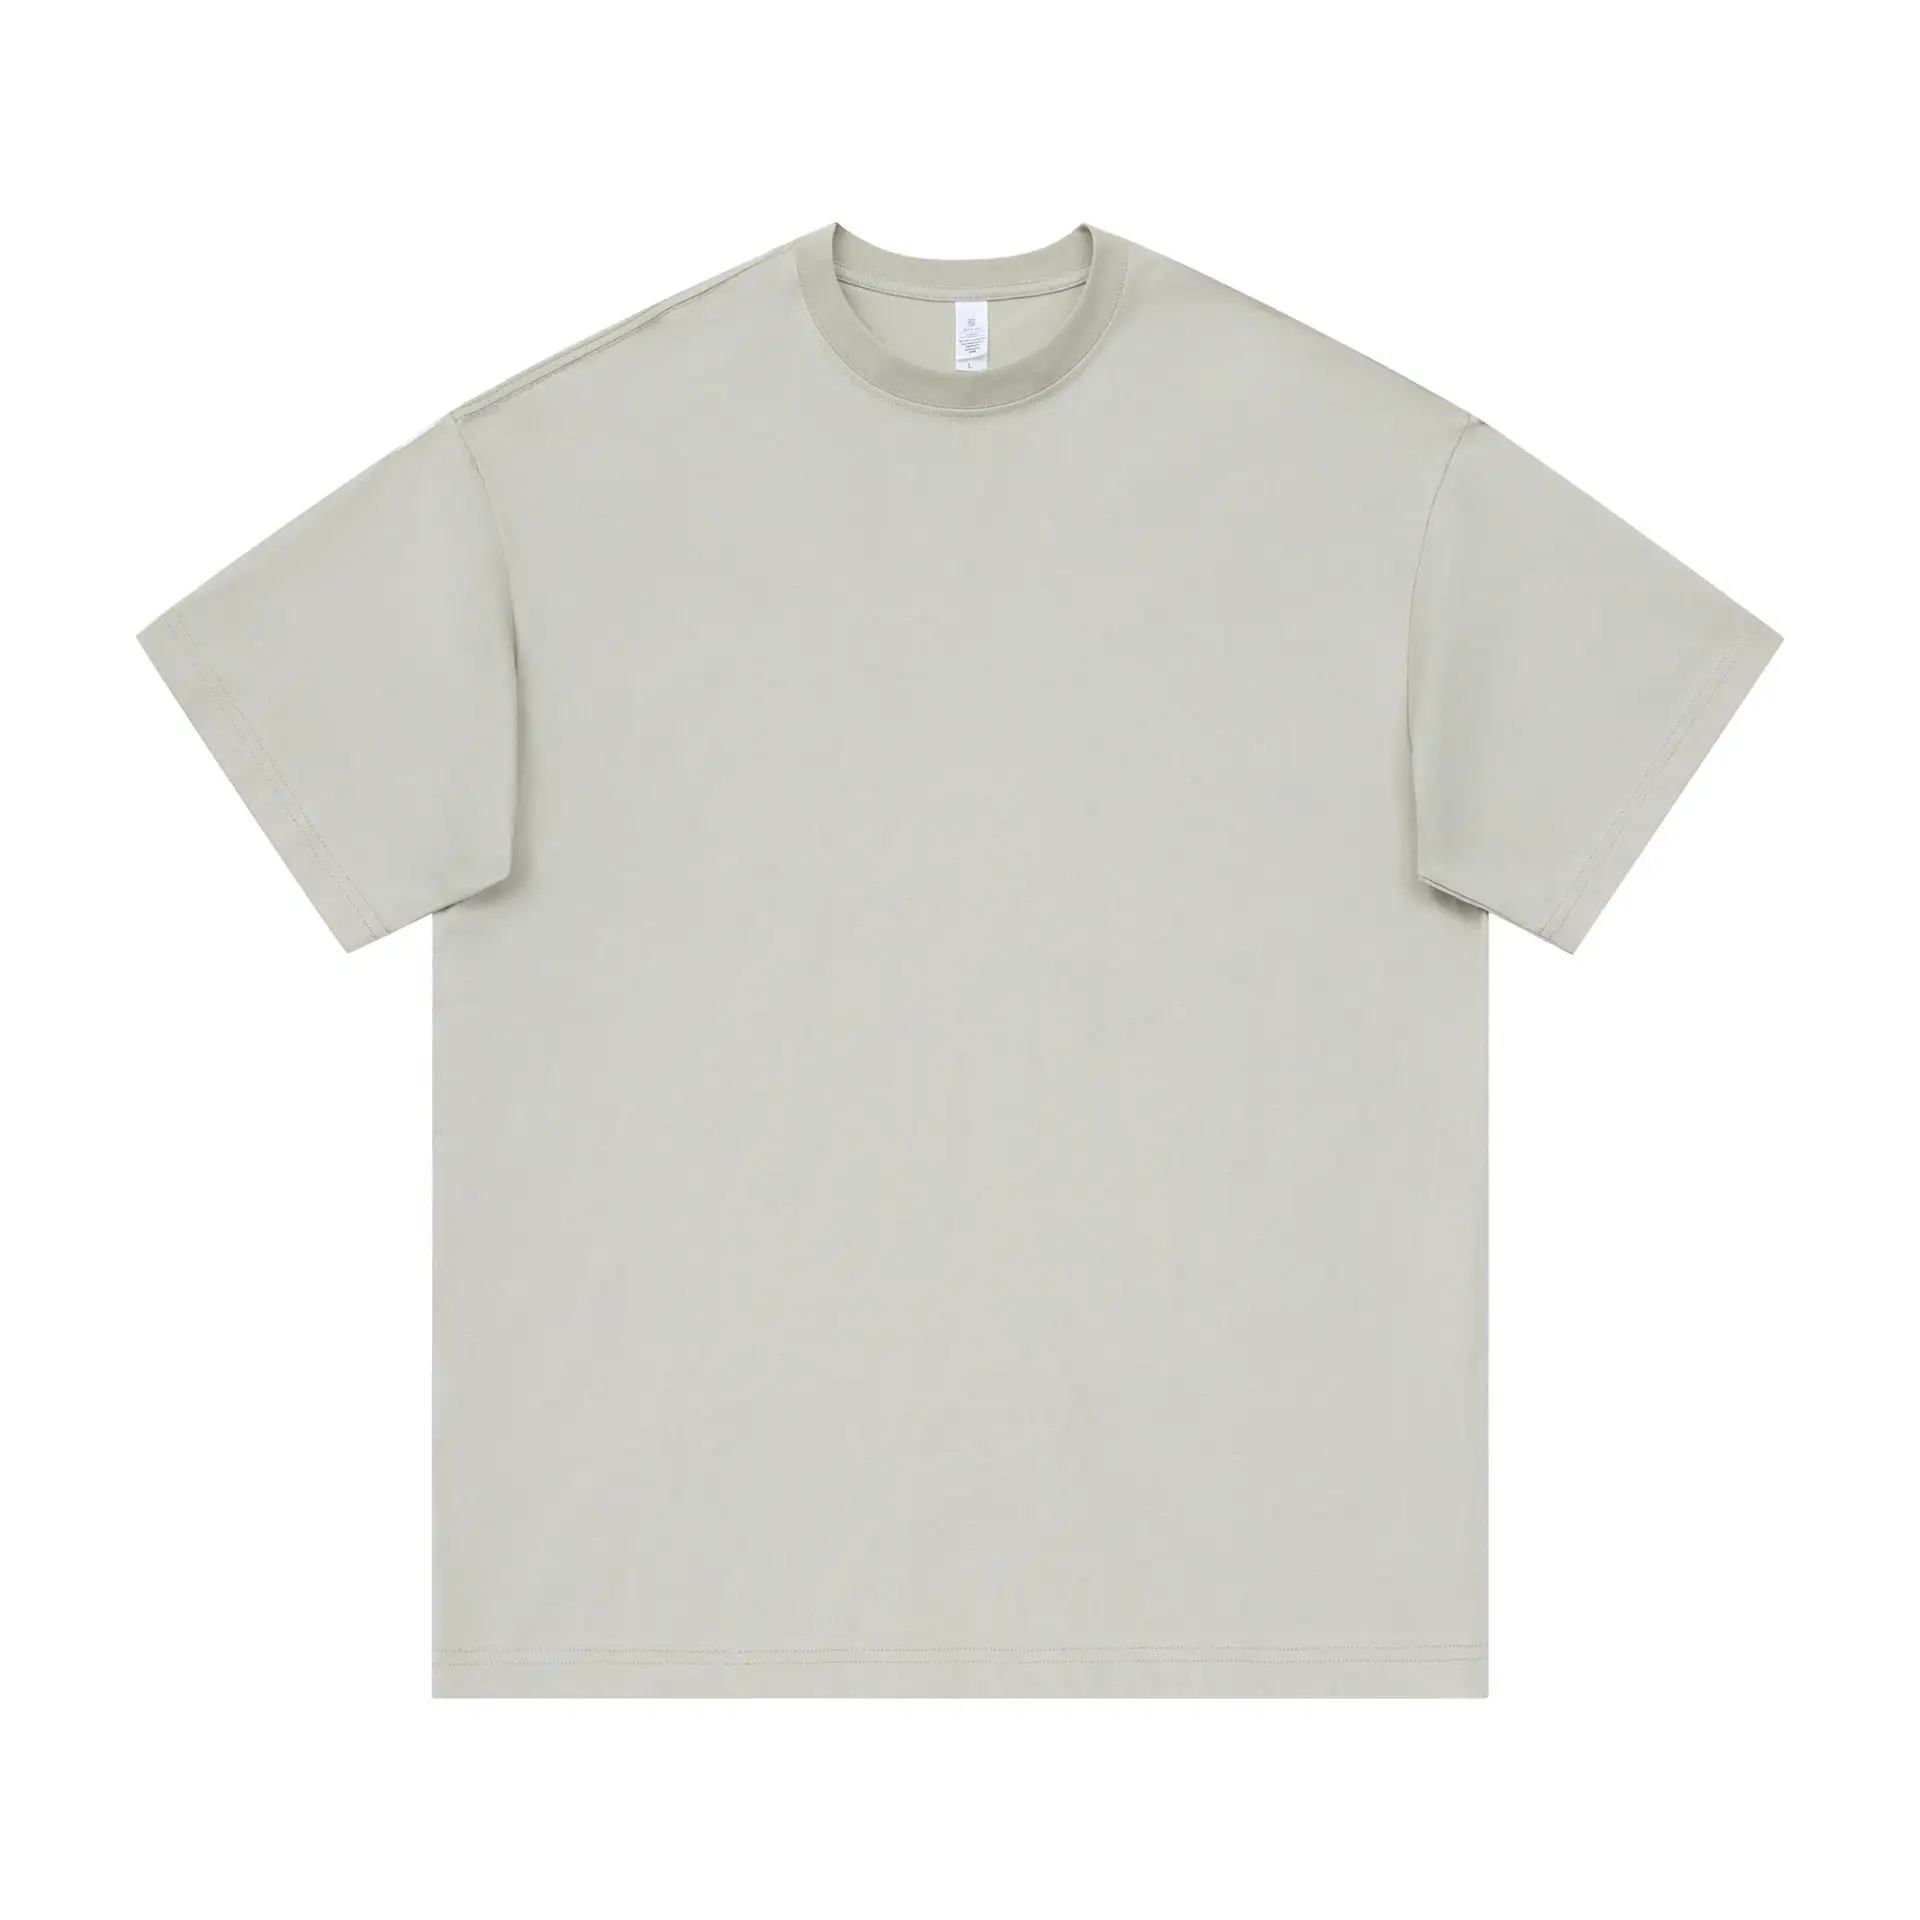 도매 사용자 정의 빈 티셔츠 특대 남성 티셔츠 인쇄 100% 면 특대 빈티지 티셔츠 240g 남성 의류